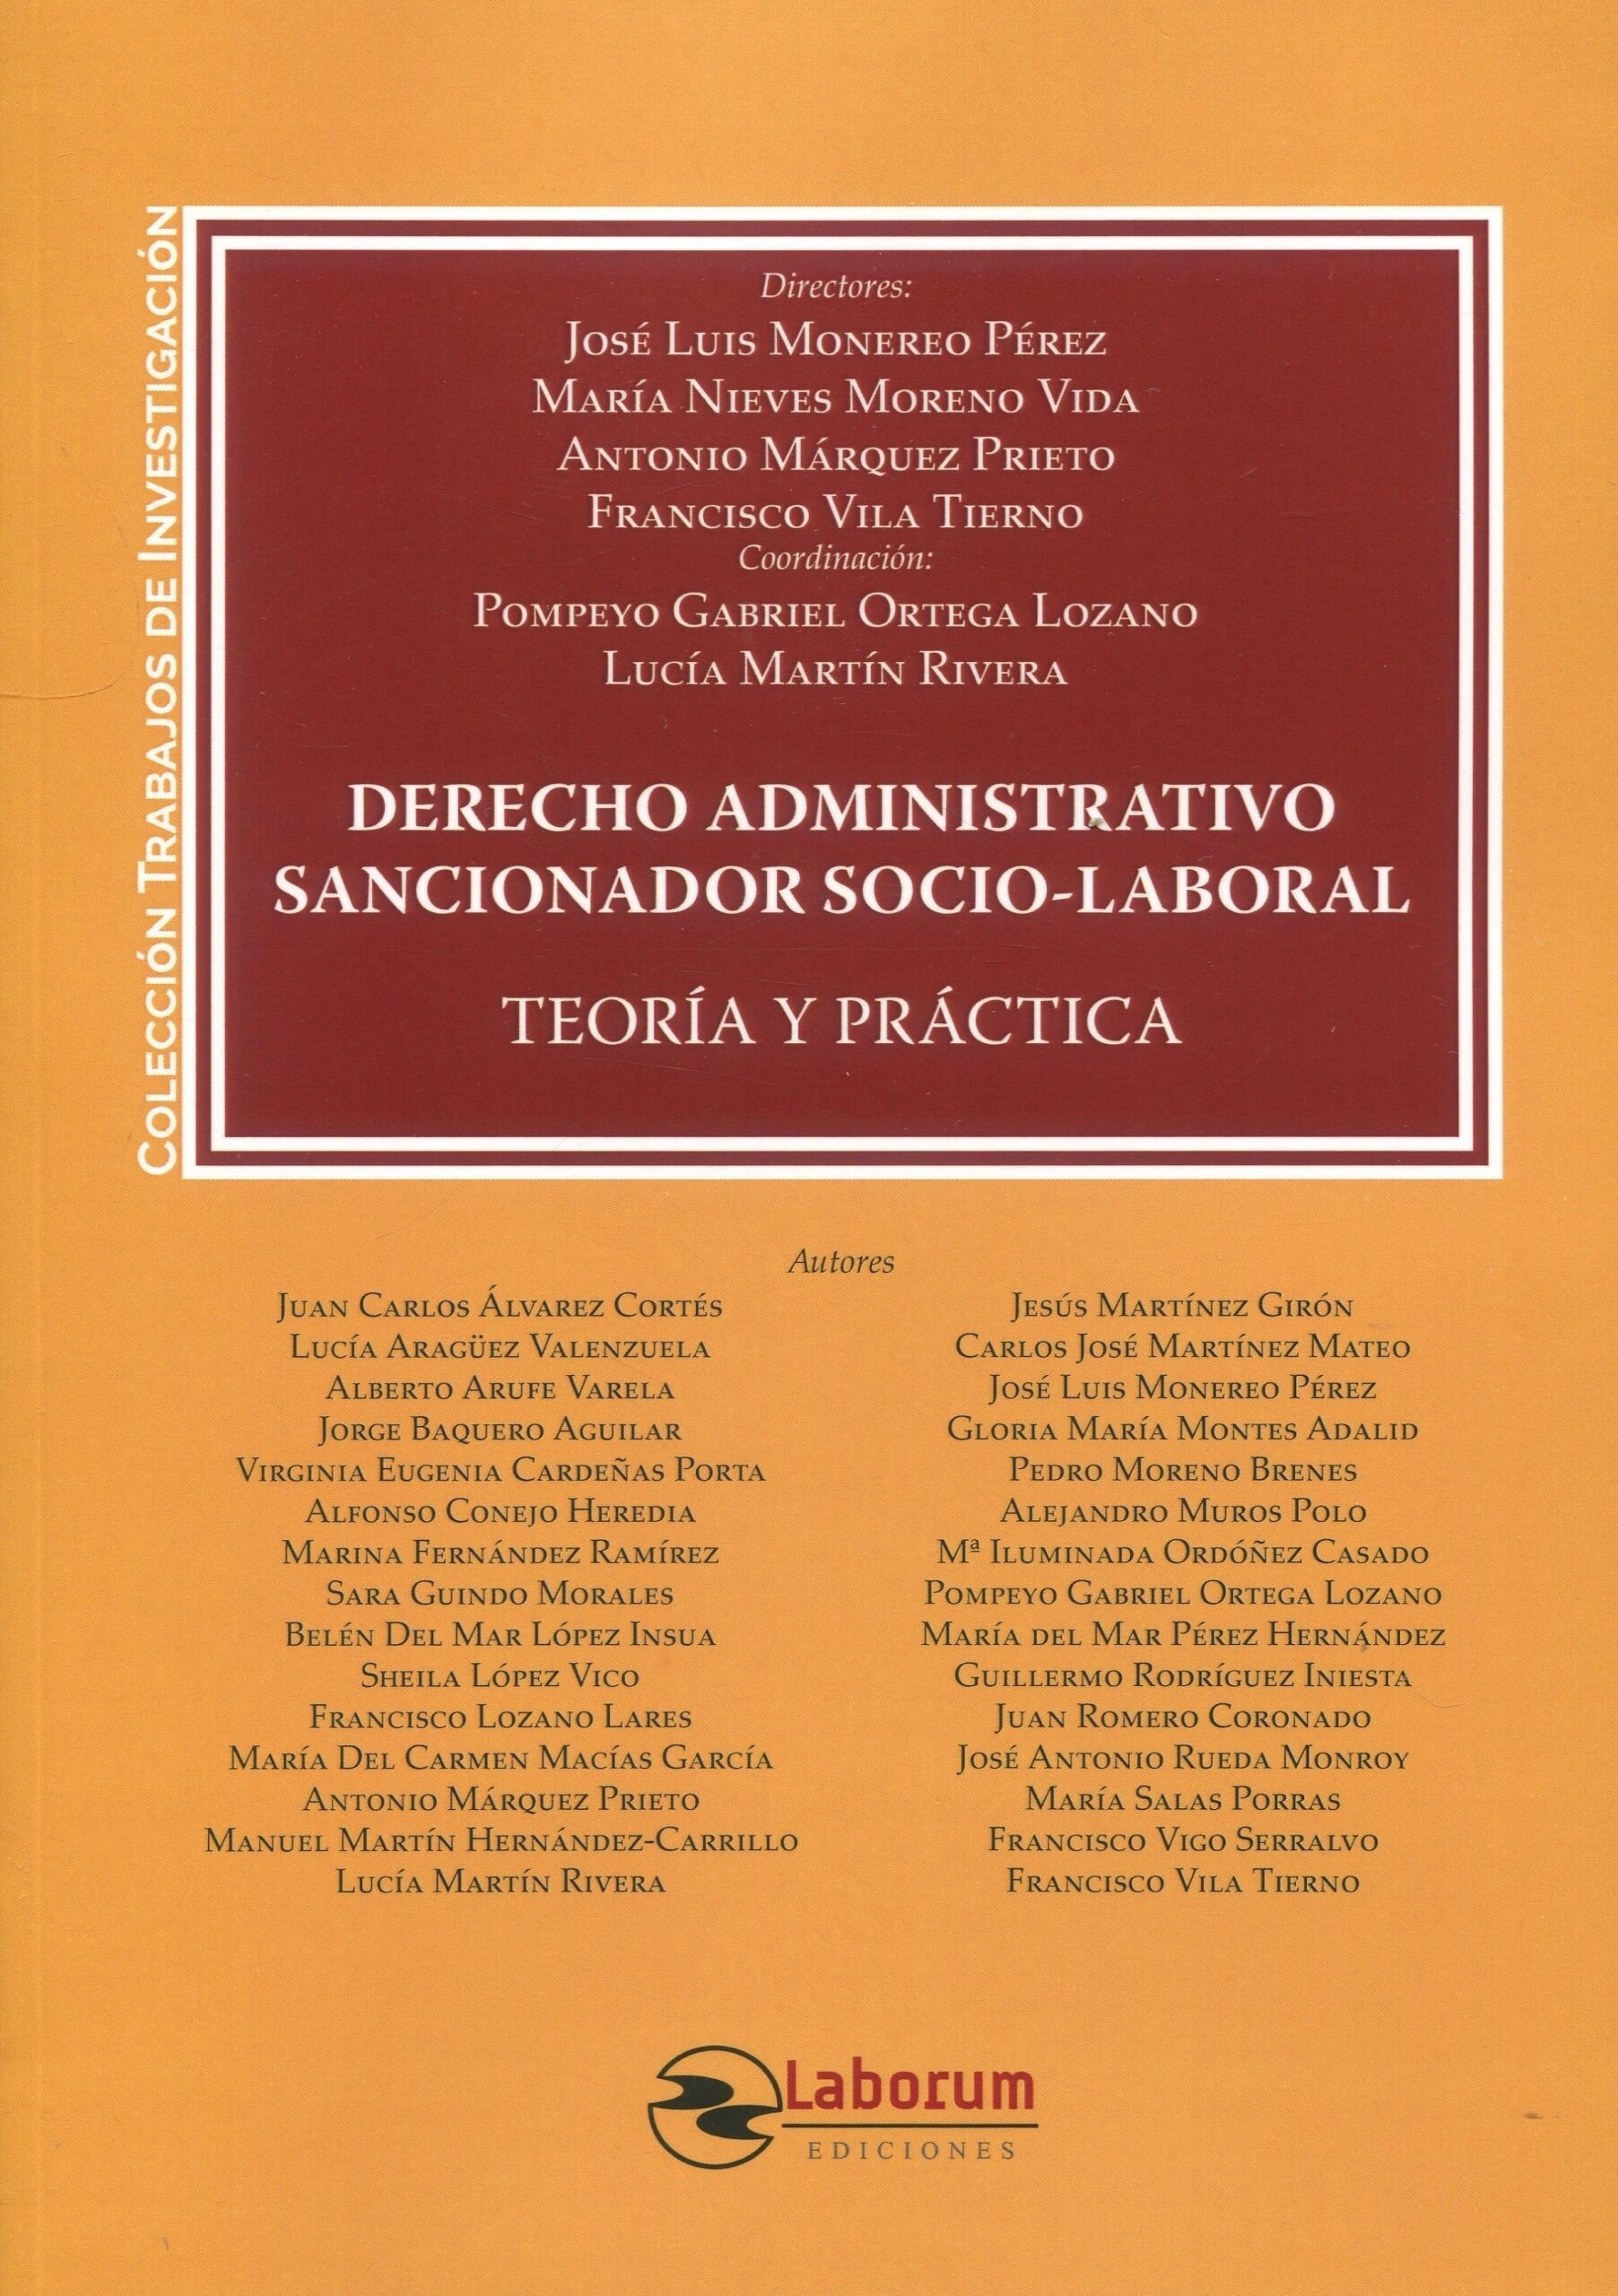 Derecho administrativo sancionador socio-laboral. Teoría y práctica